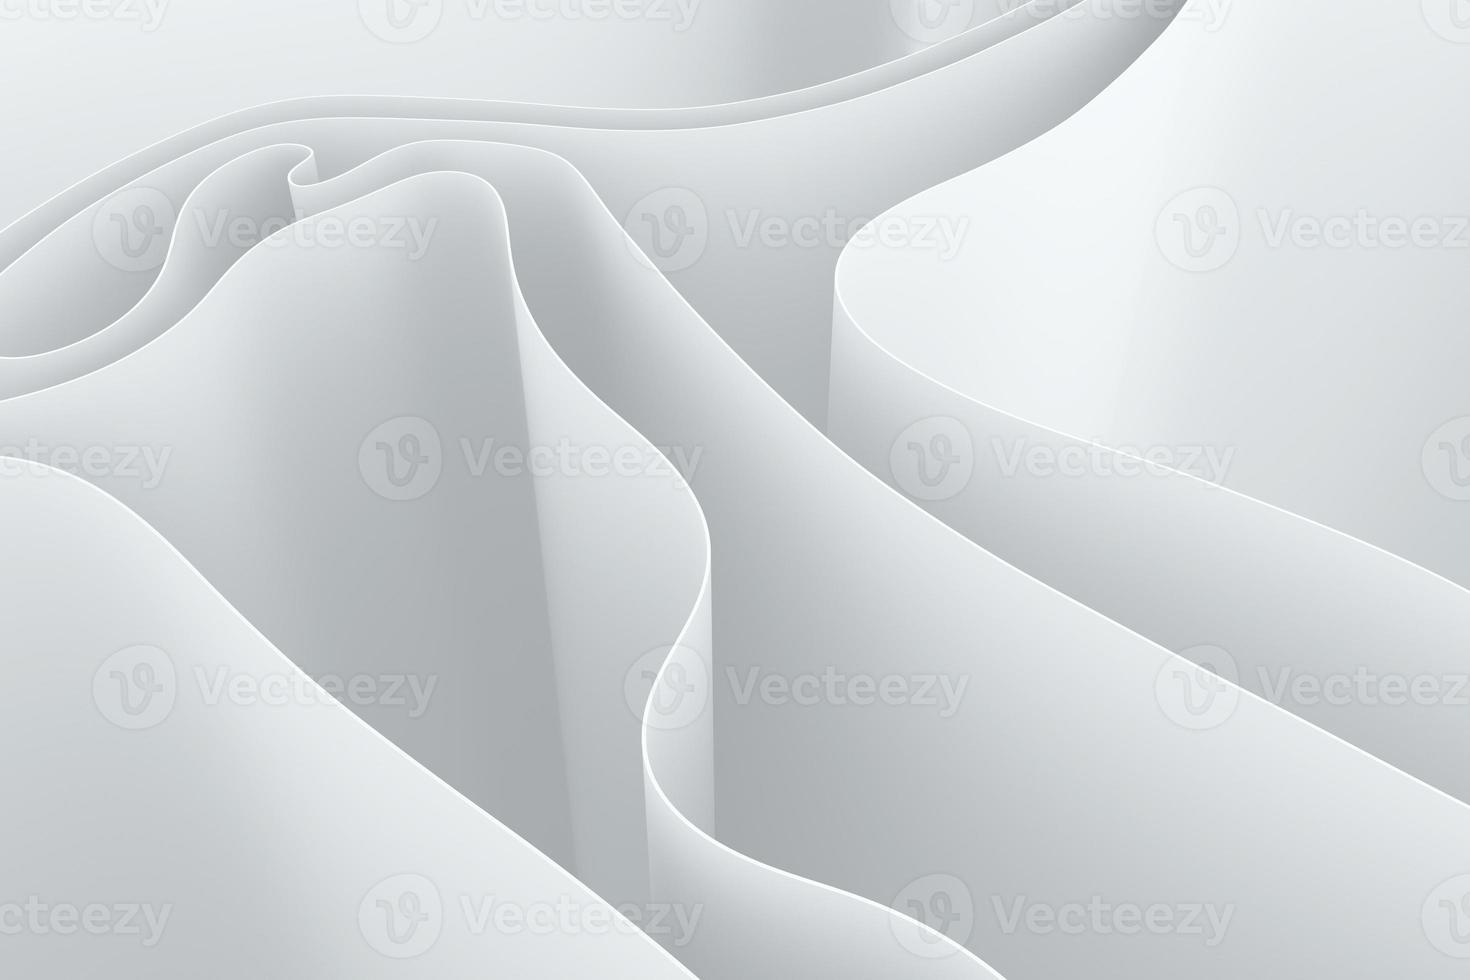 sfondo astratto bianco onda curva. illustrazione 3d geometrica per biglietti, banner, copertine e presentazioni foto